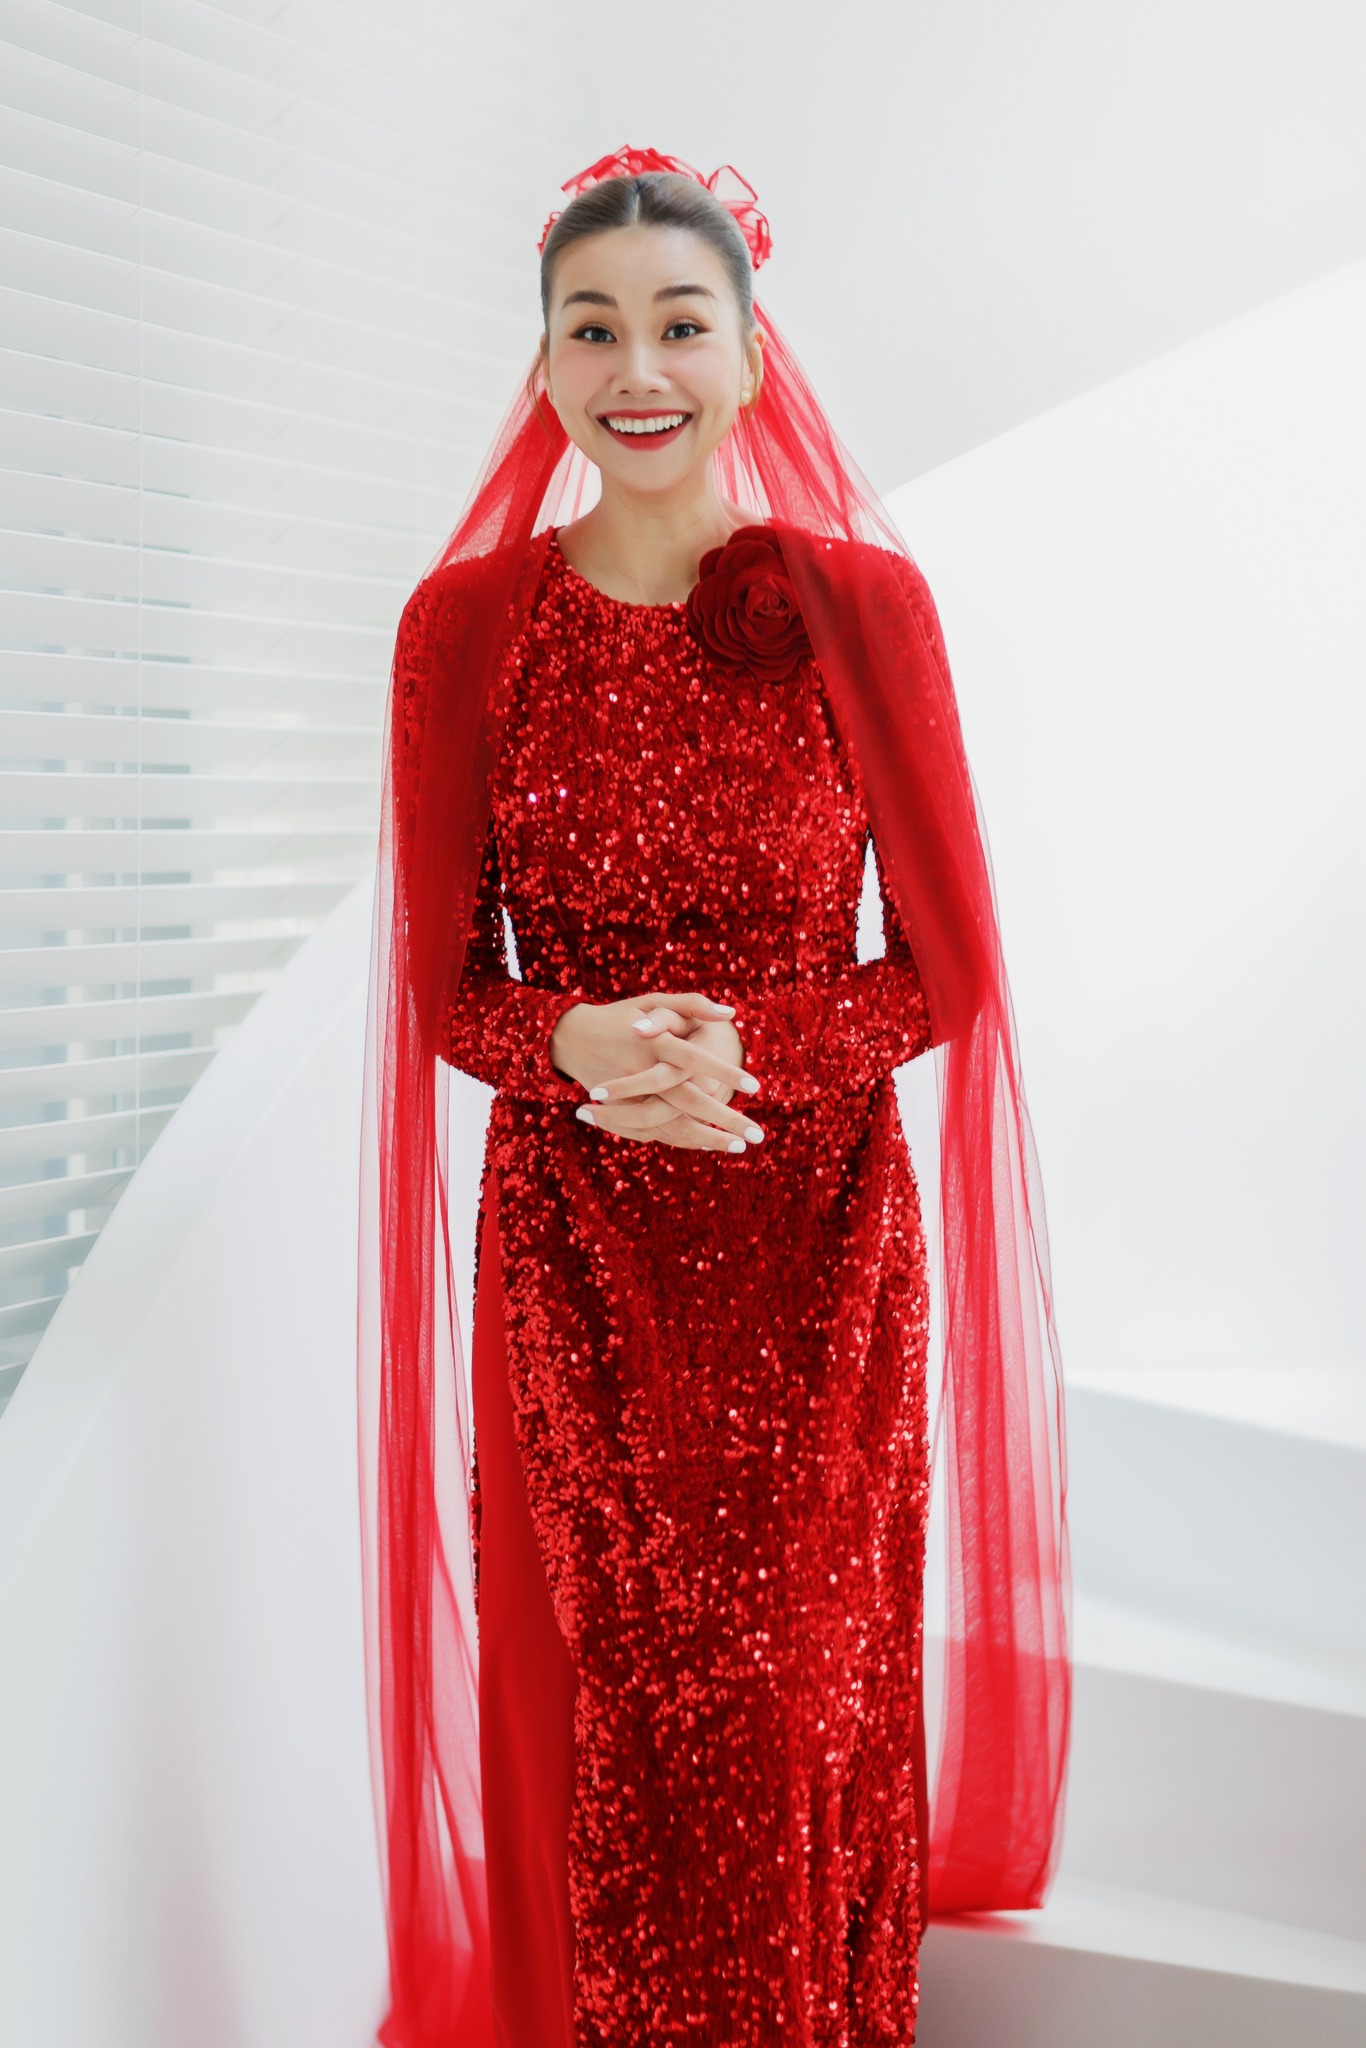 Hình ảnh từ hôn lễ của siêu mẫu Thanh Hằng, cô dâu đẹp rực rỡ trong sắc đỏ về nhà chồng - ảnh 7